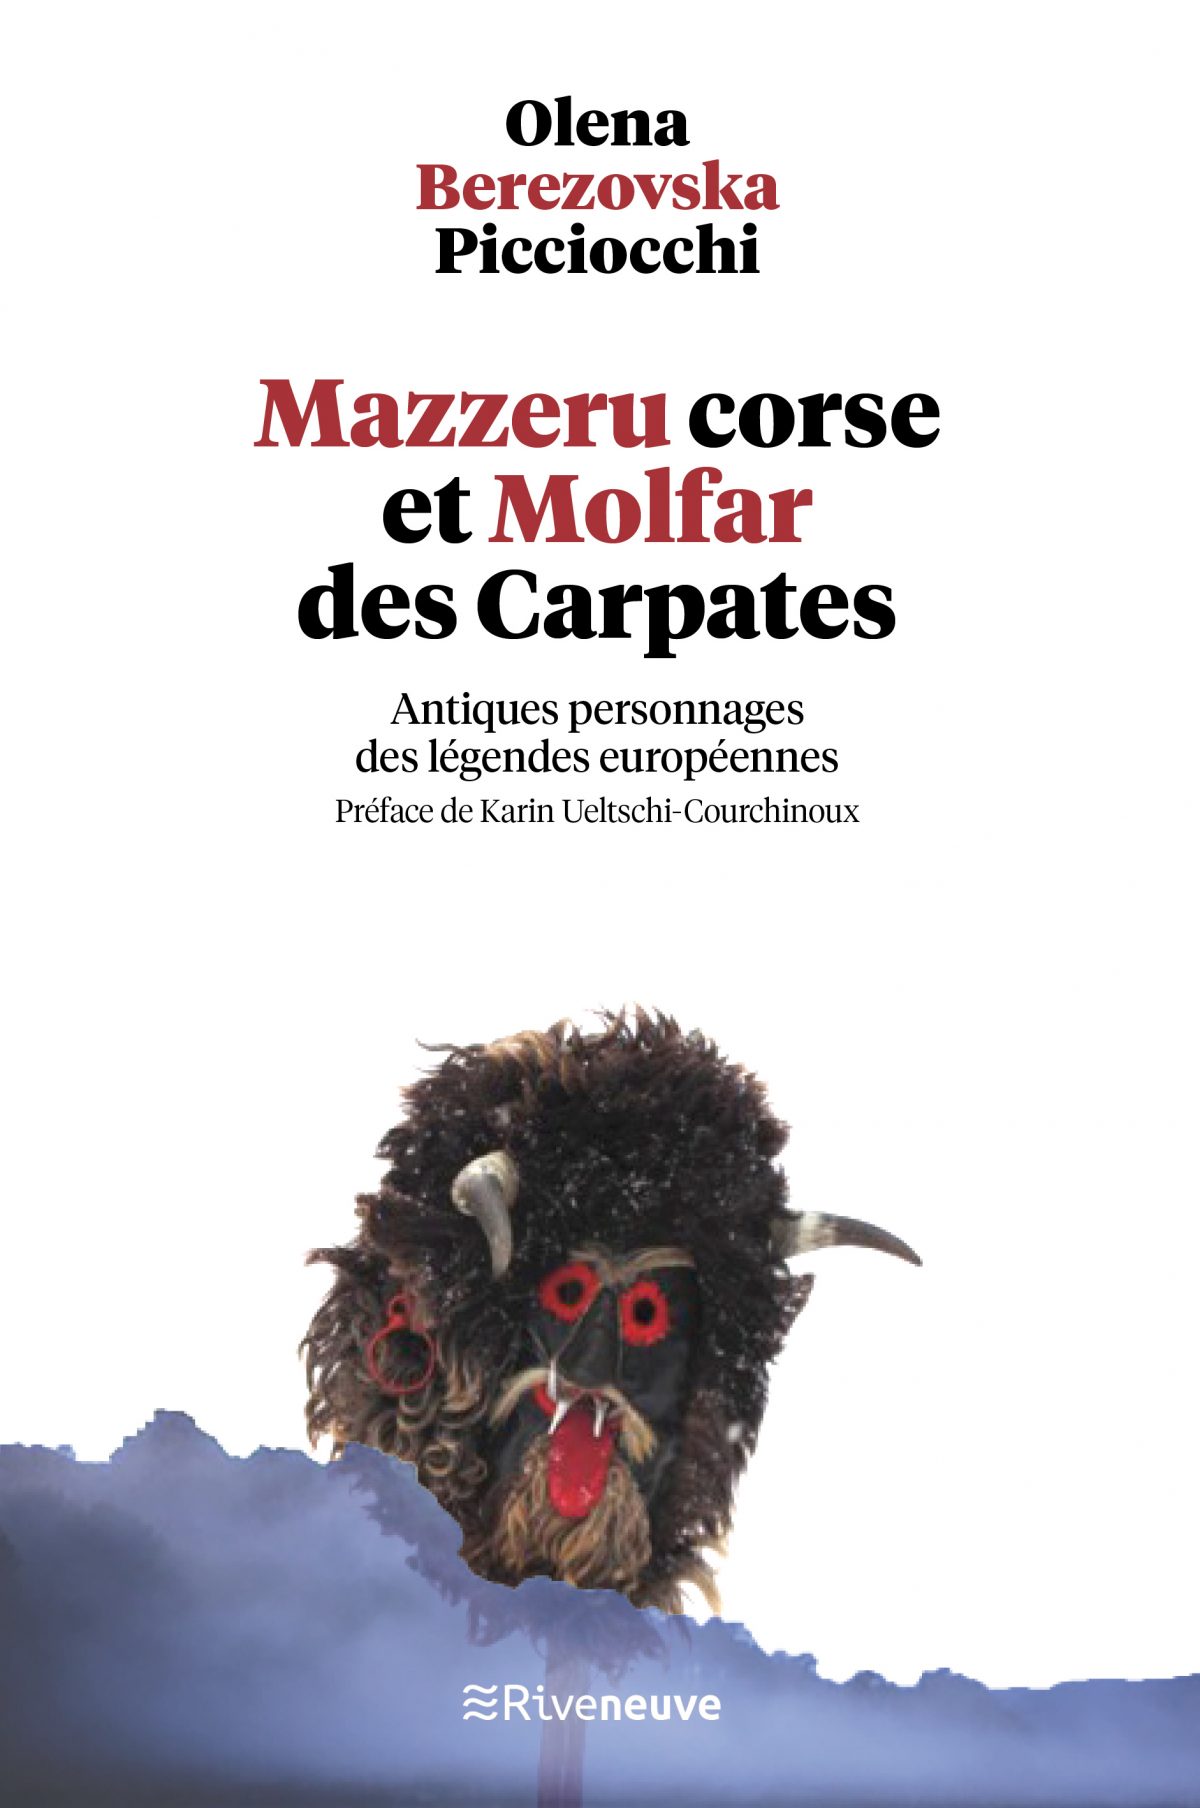 Mazzeru corse et Molfar des Carpates.  Antiques personnages des légendes européennes, Paris : Riveneuve, 2019.